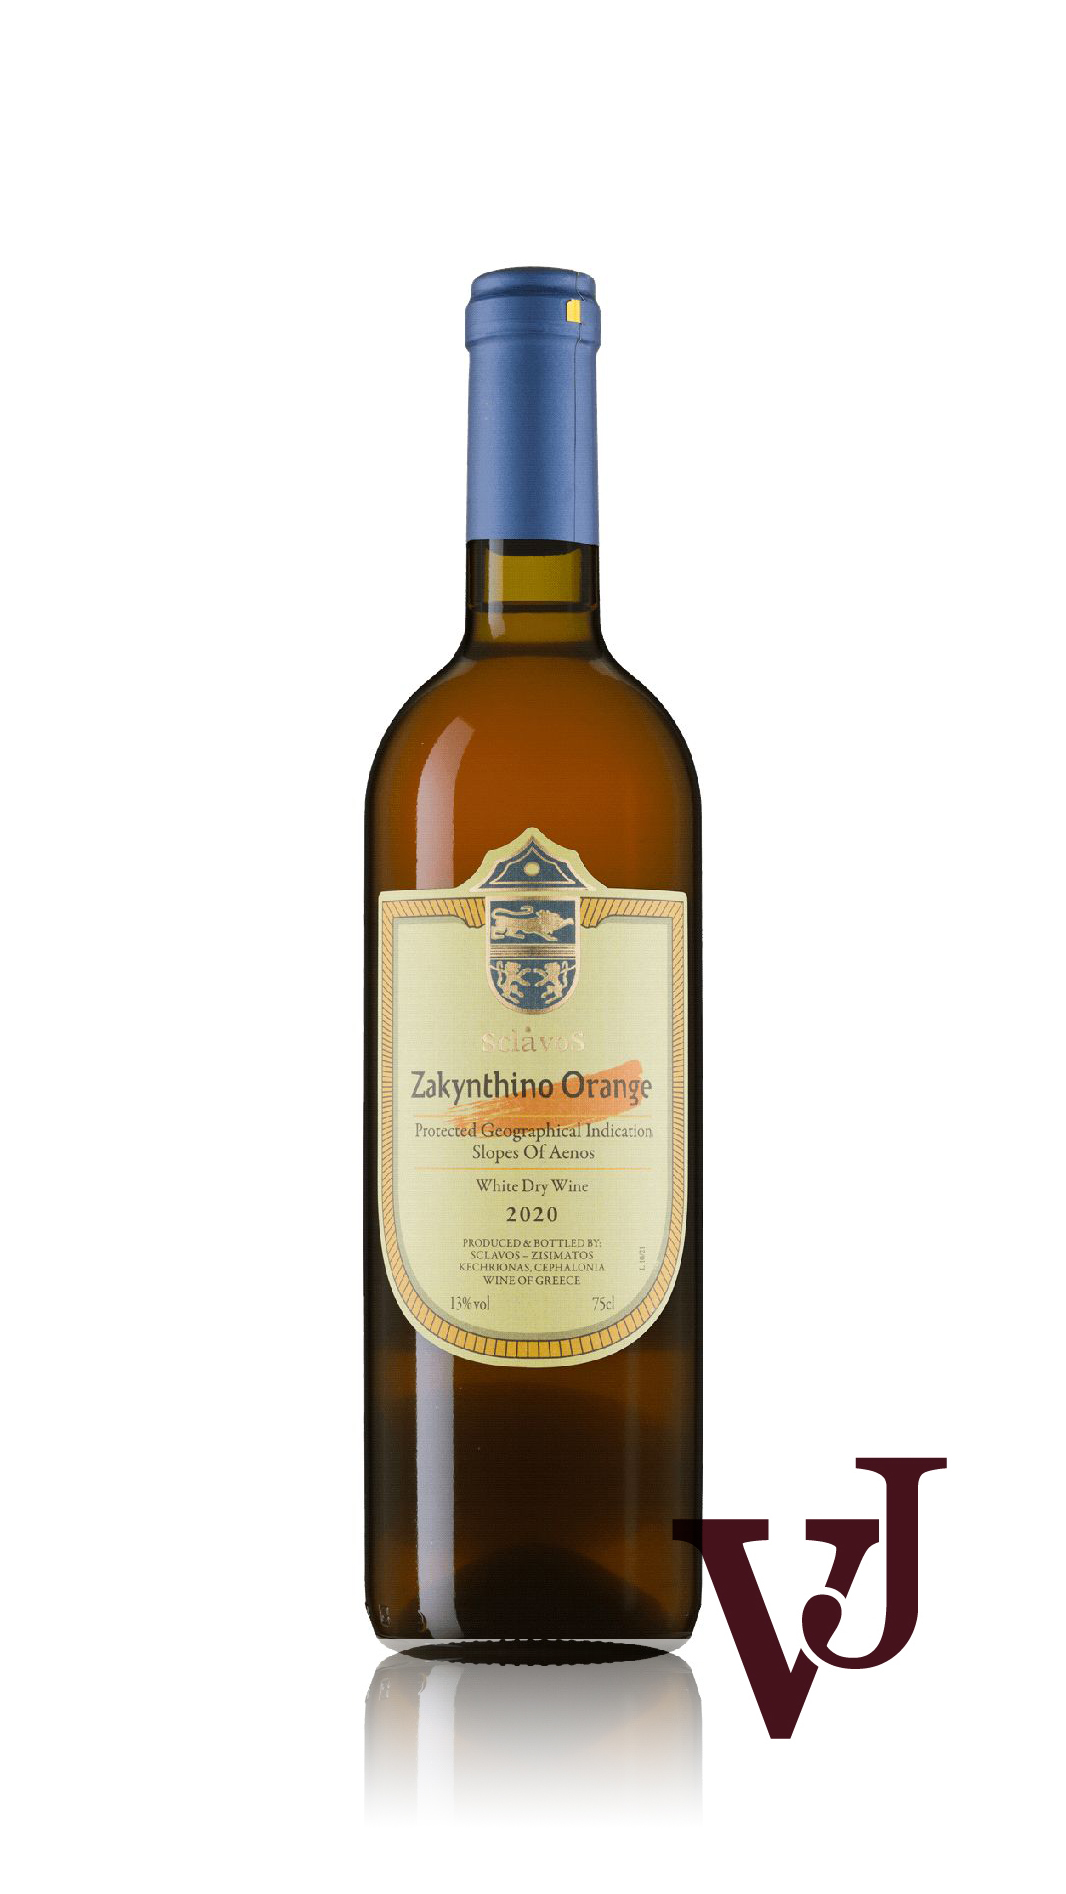 Vitt Vin - Zakynthino Orange artikel nummer 7651601 från producenten Sclavos från Grekland.